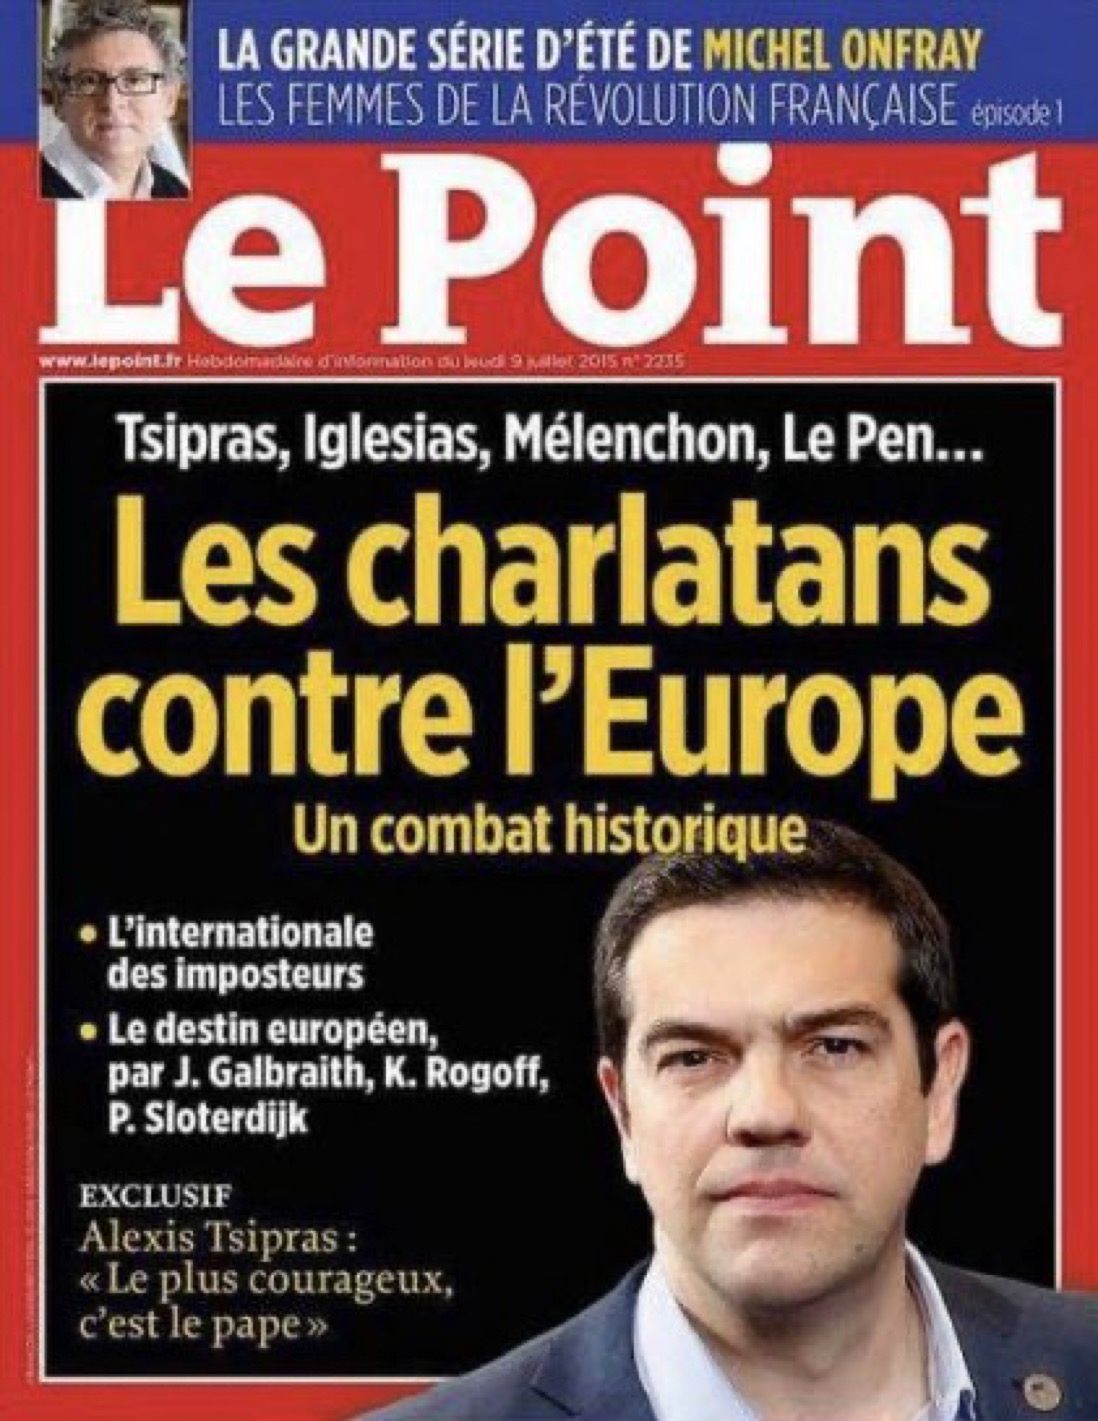 Ο Γ. Οικονόμου για το άρθρο του γαλλικού περιοδικού Le Point και τον Αλ. Τσίπρα